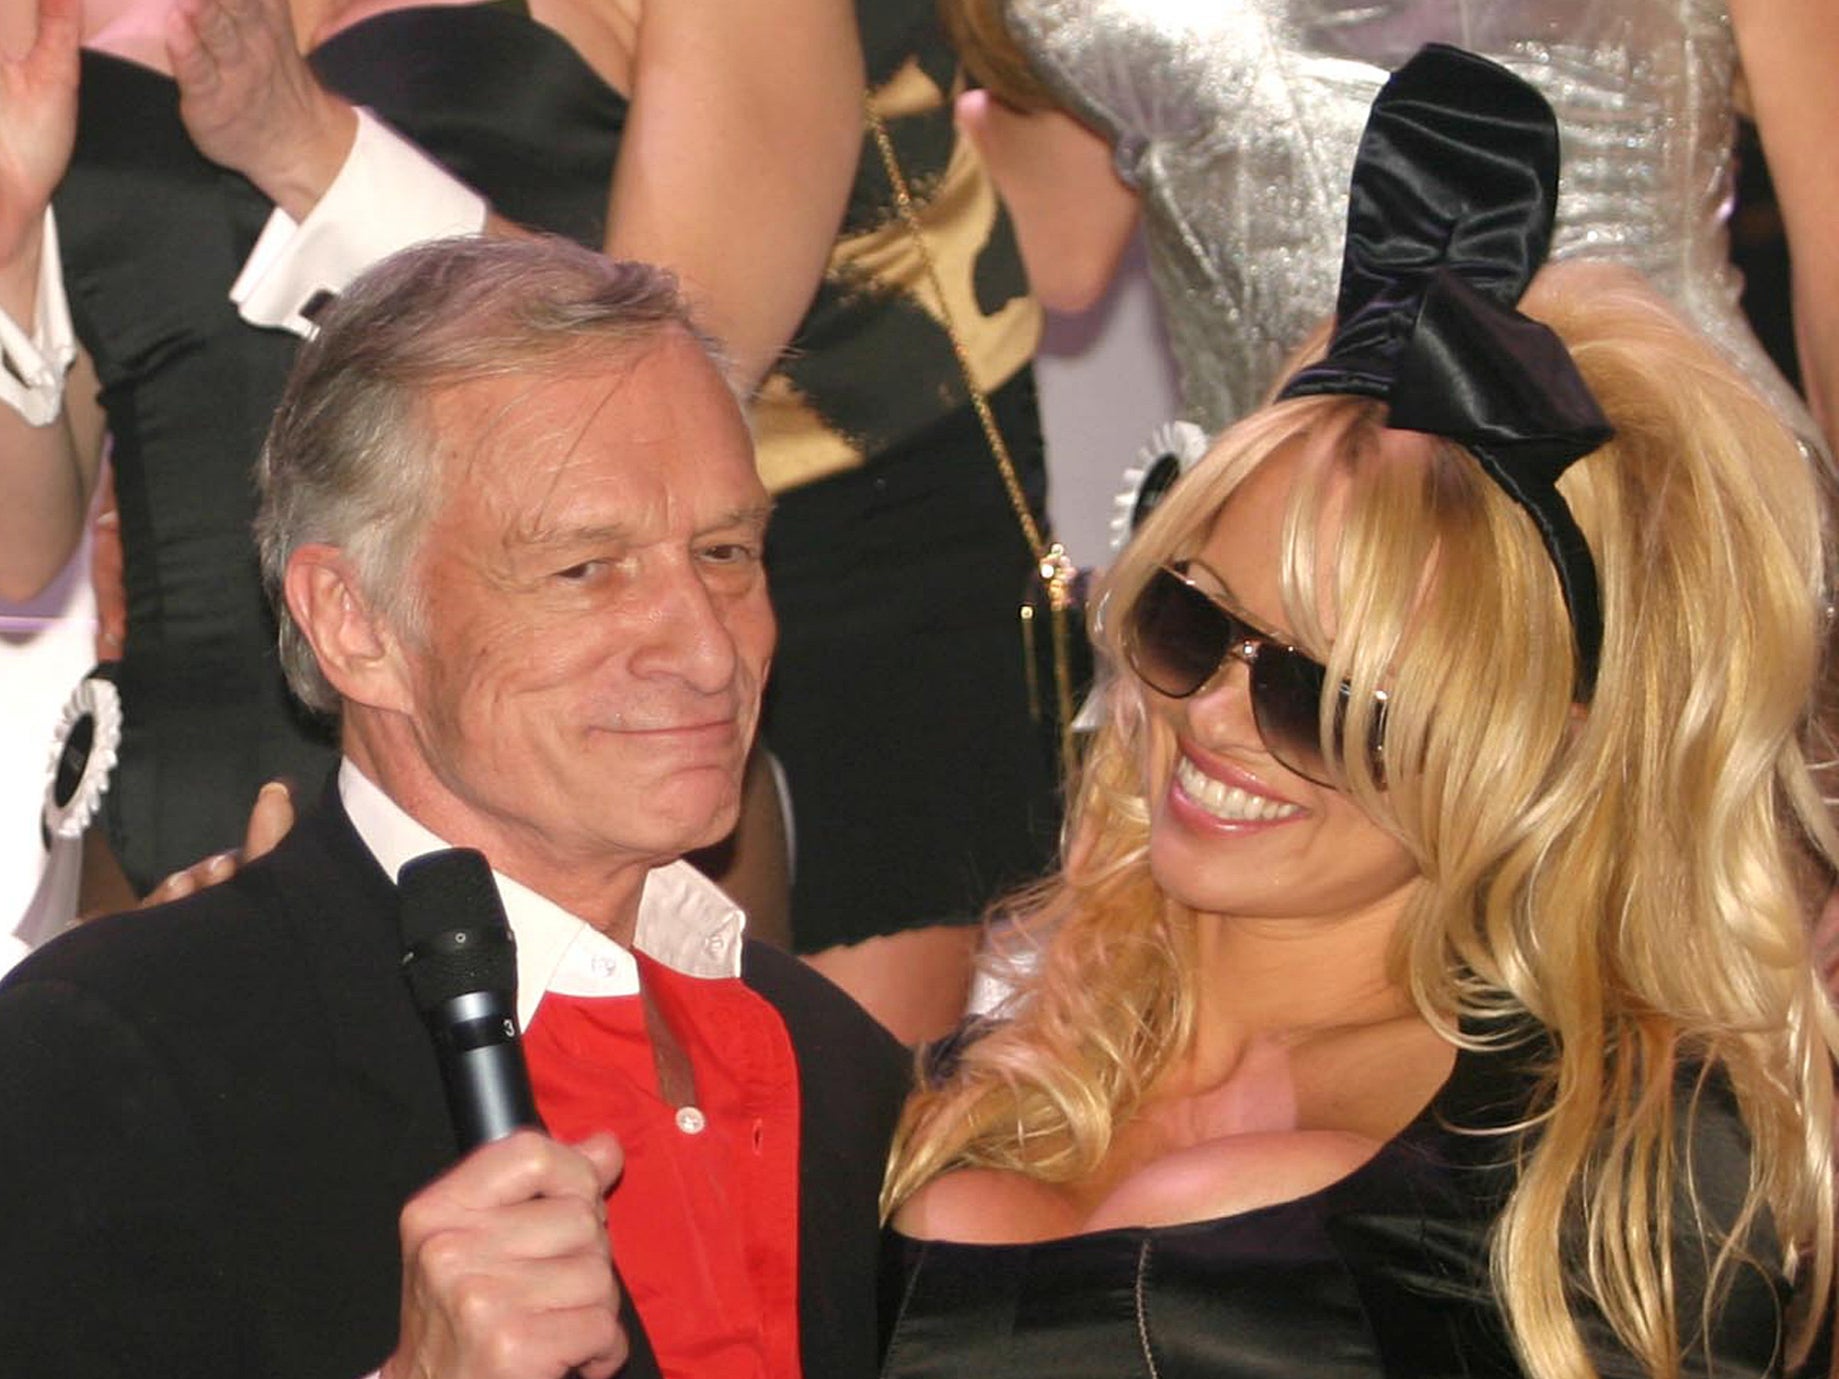 Hugh Hefner and Pamela Anderson together in 2003